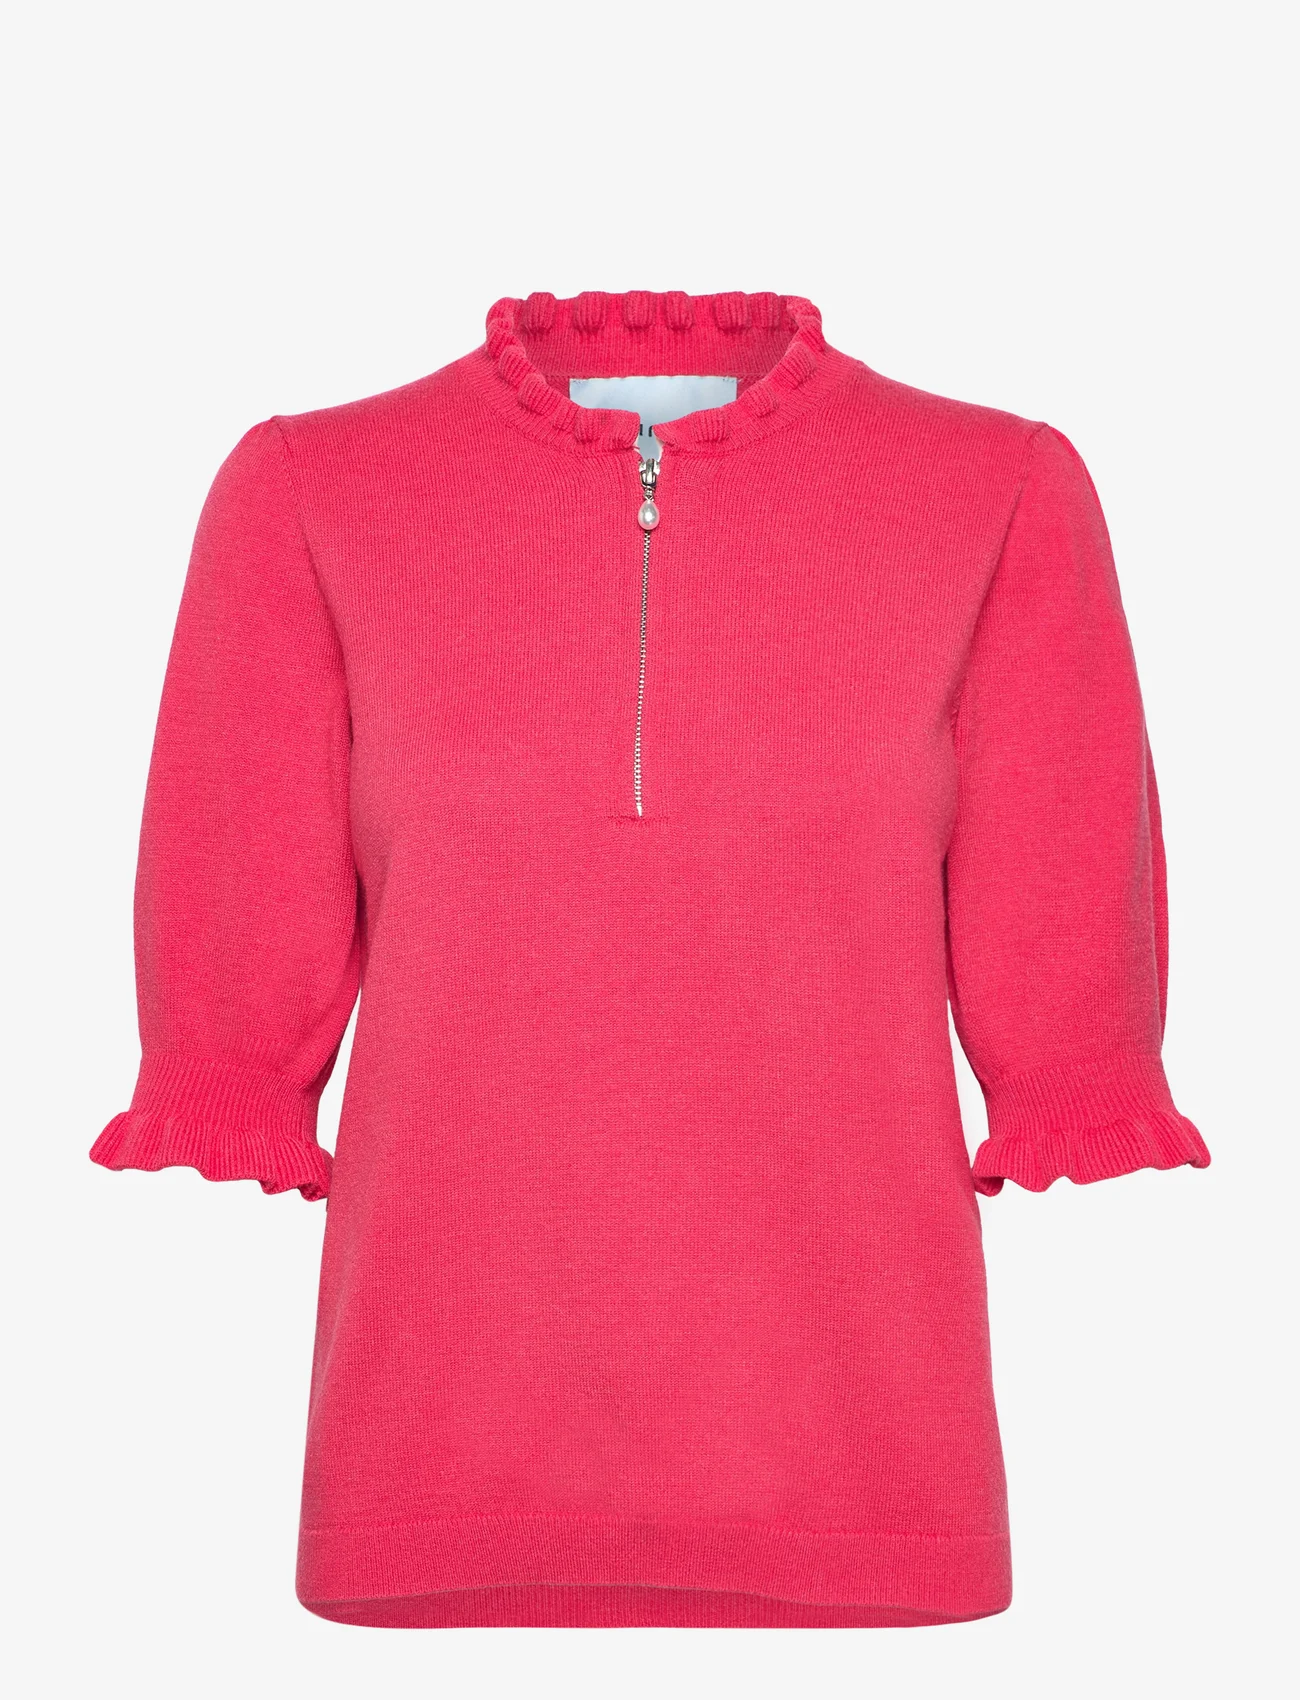 Minus - MSKessa Knit T-Shirt - sweaters - teaberry pink - 0